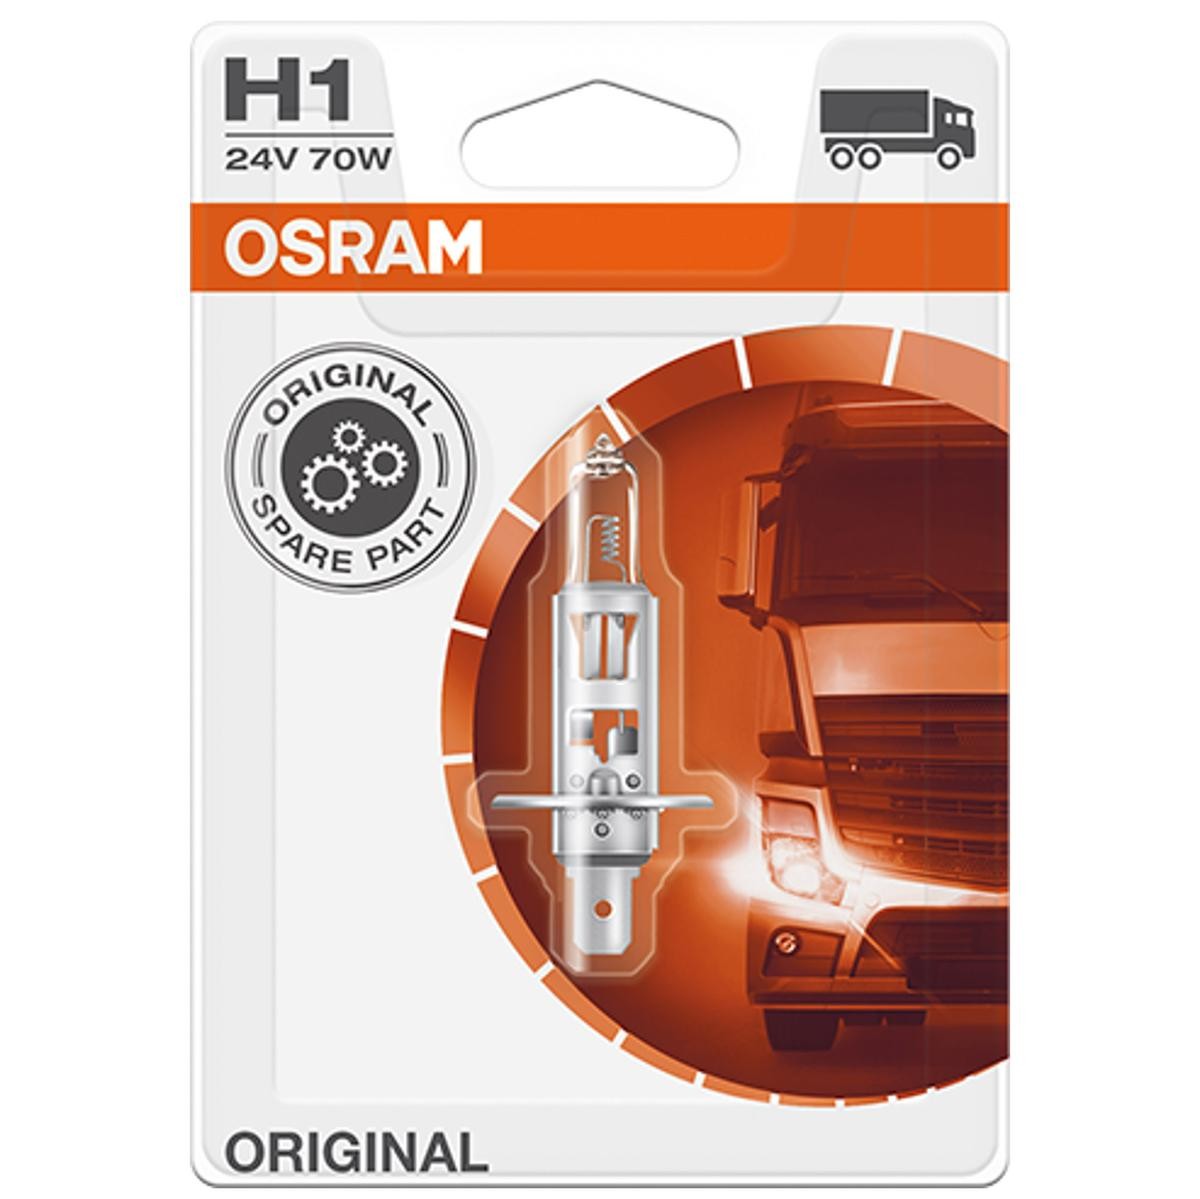 H1 OSRAM ORIGINAL H1 24V 70W P14,5s 3200K Halogen Glühlampe, Fernscheinwerfer 64155-01B günstig kaufen